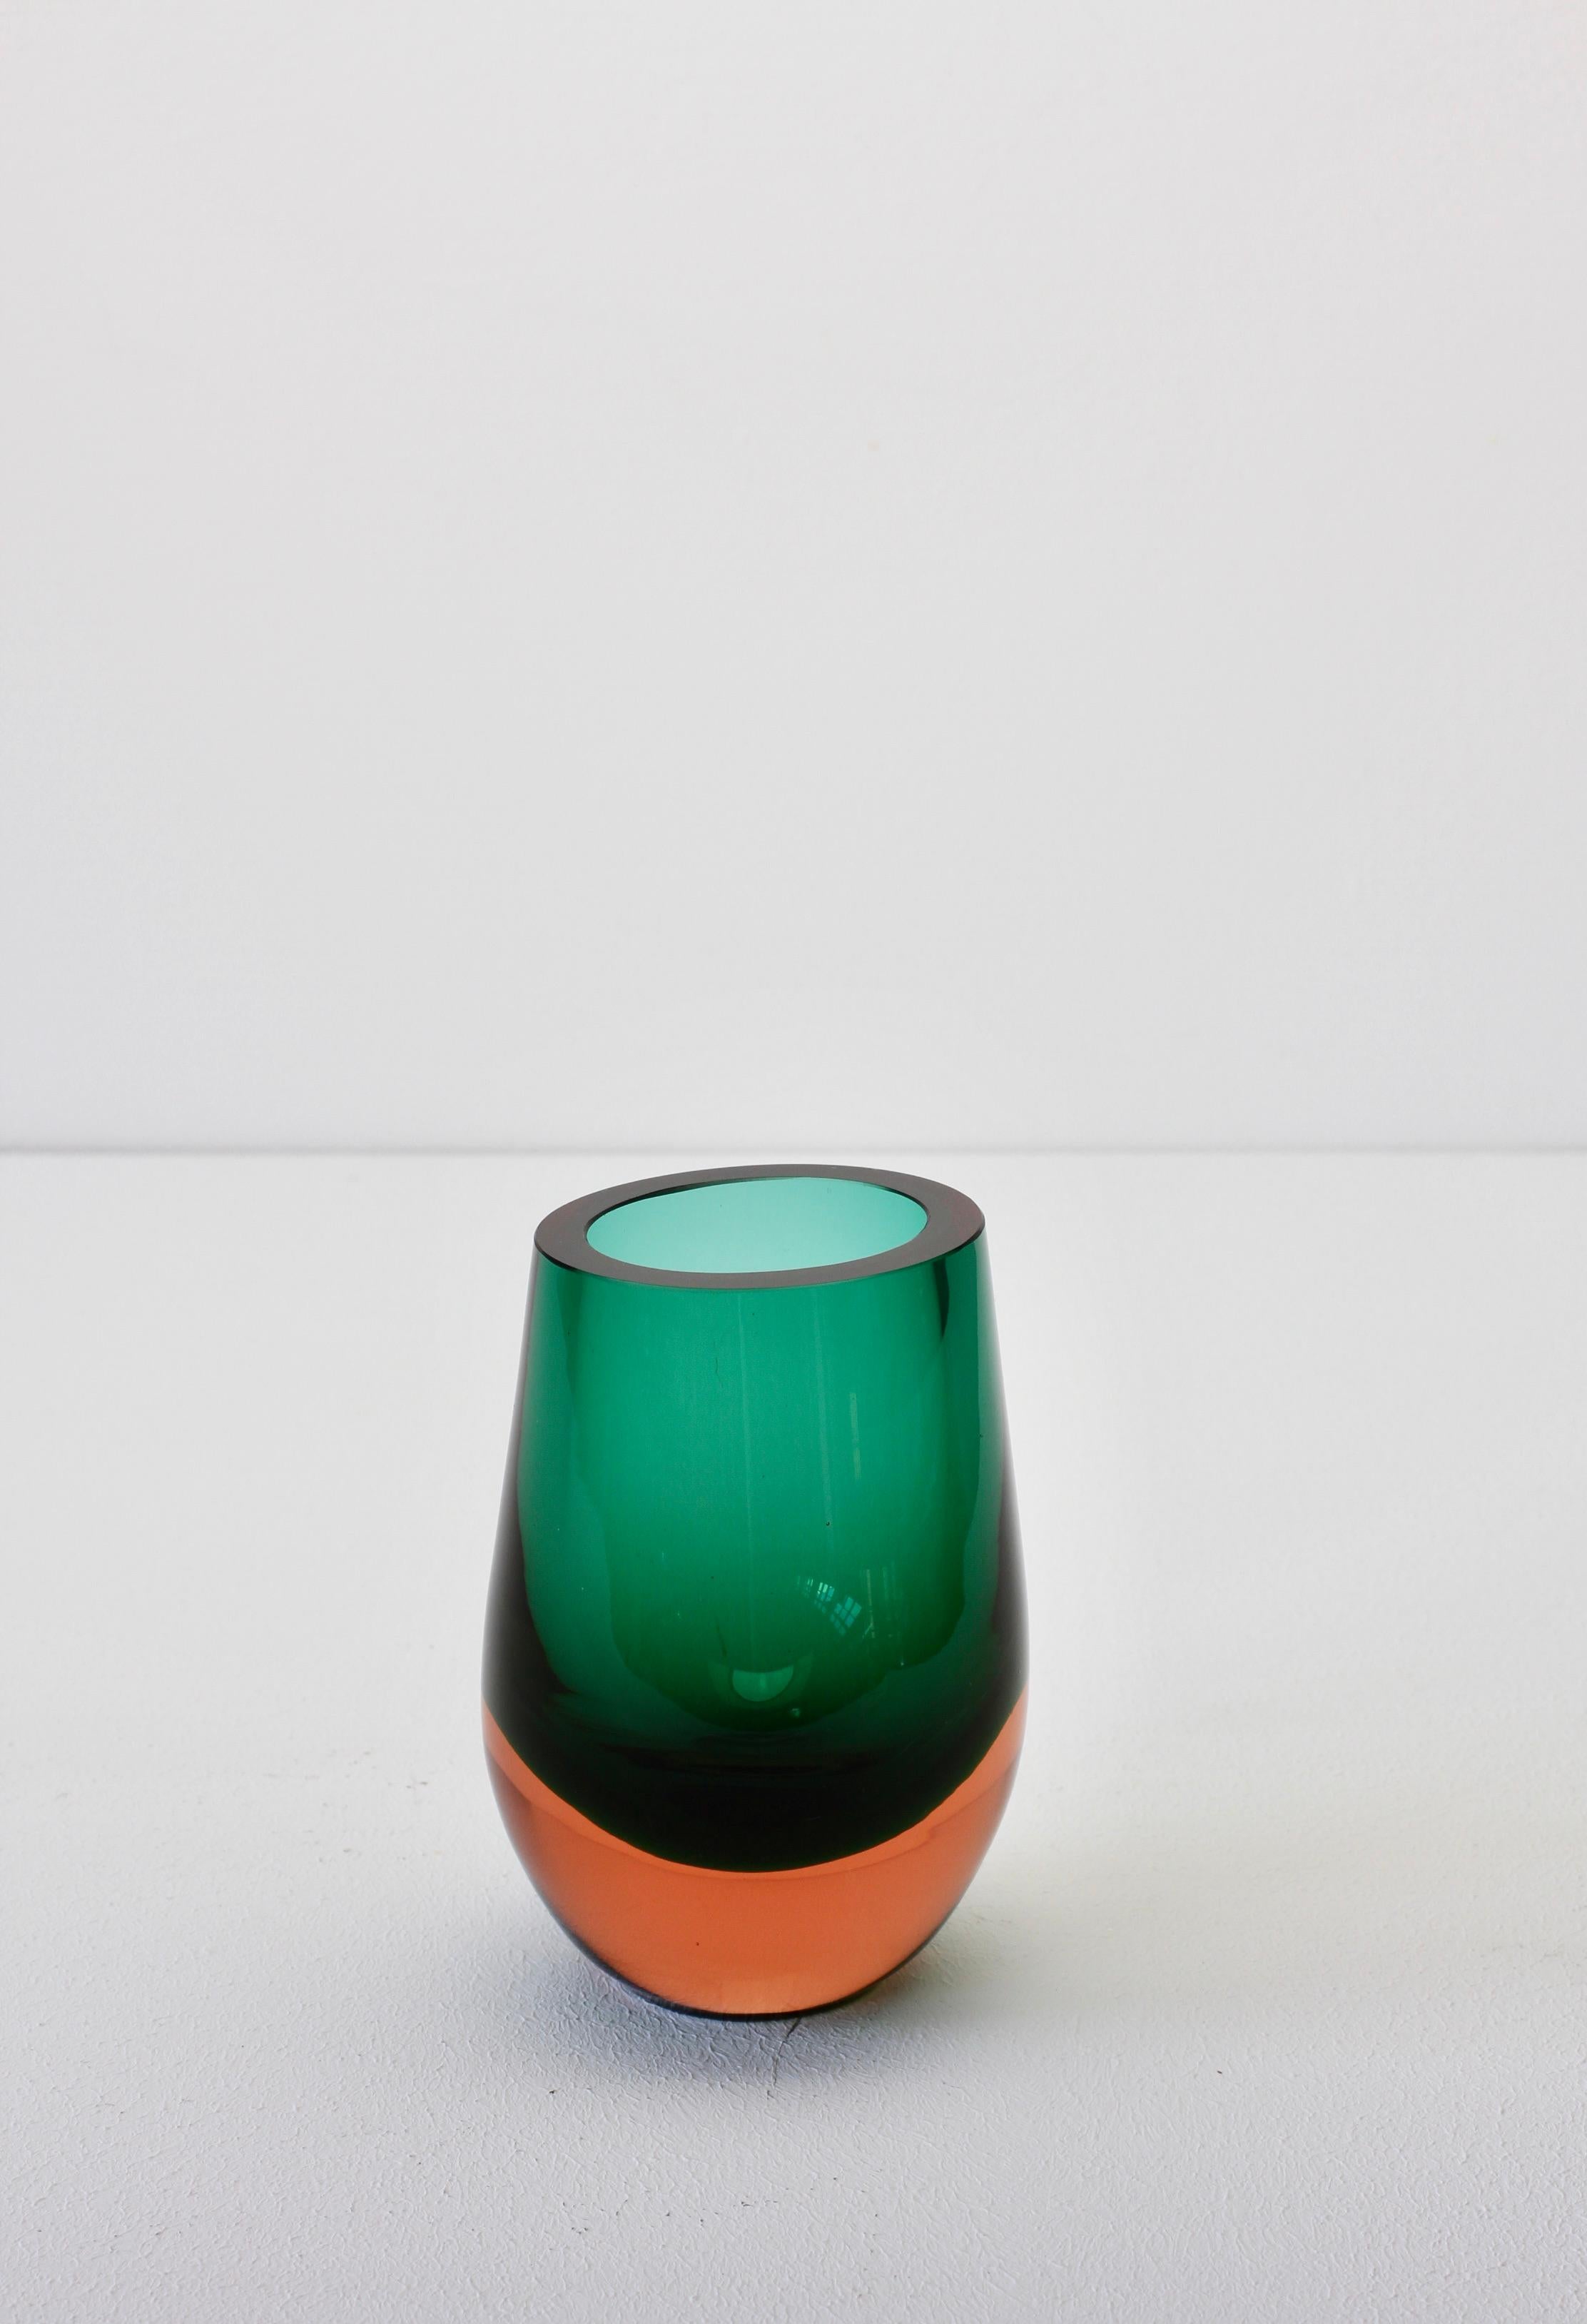 German Vintage Green and Orange Glass Vase by Konrad Habermeier for Gral Glas, 1965